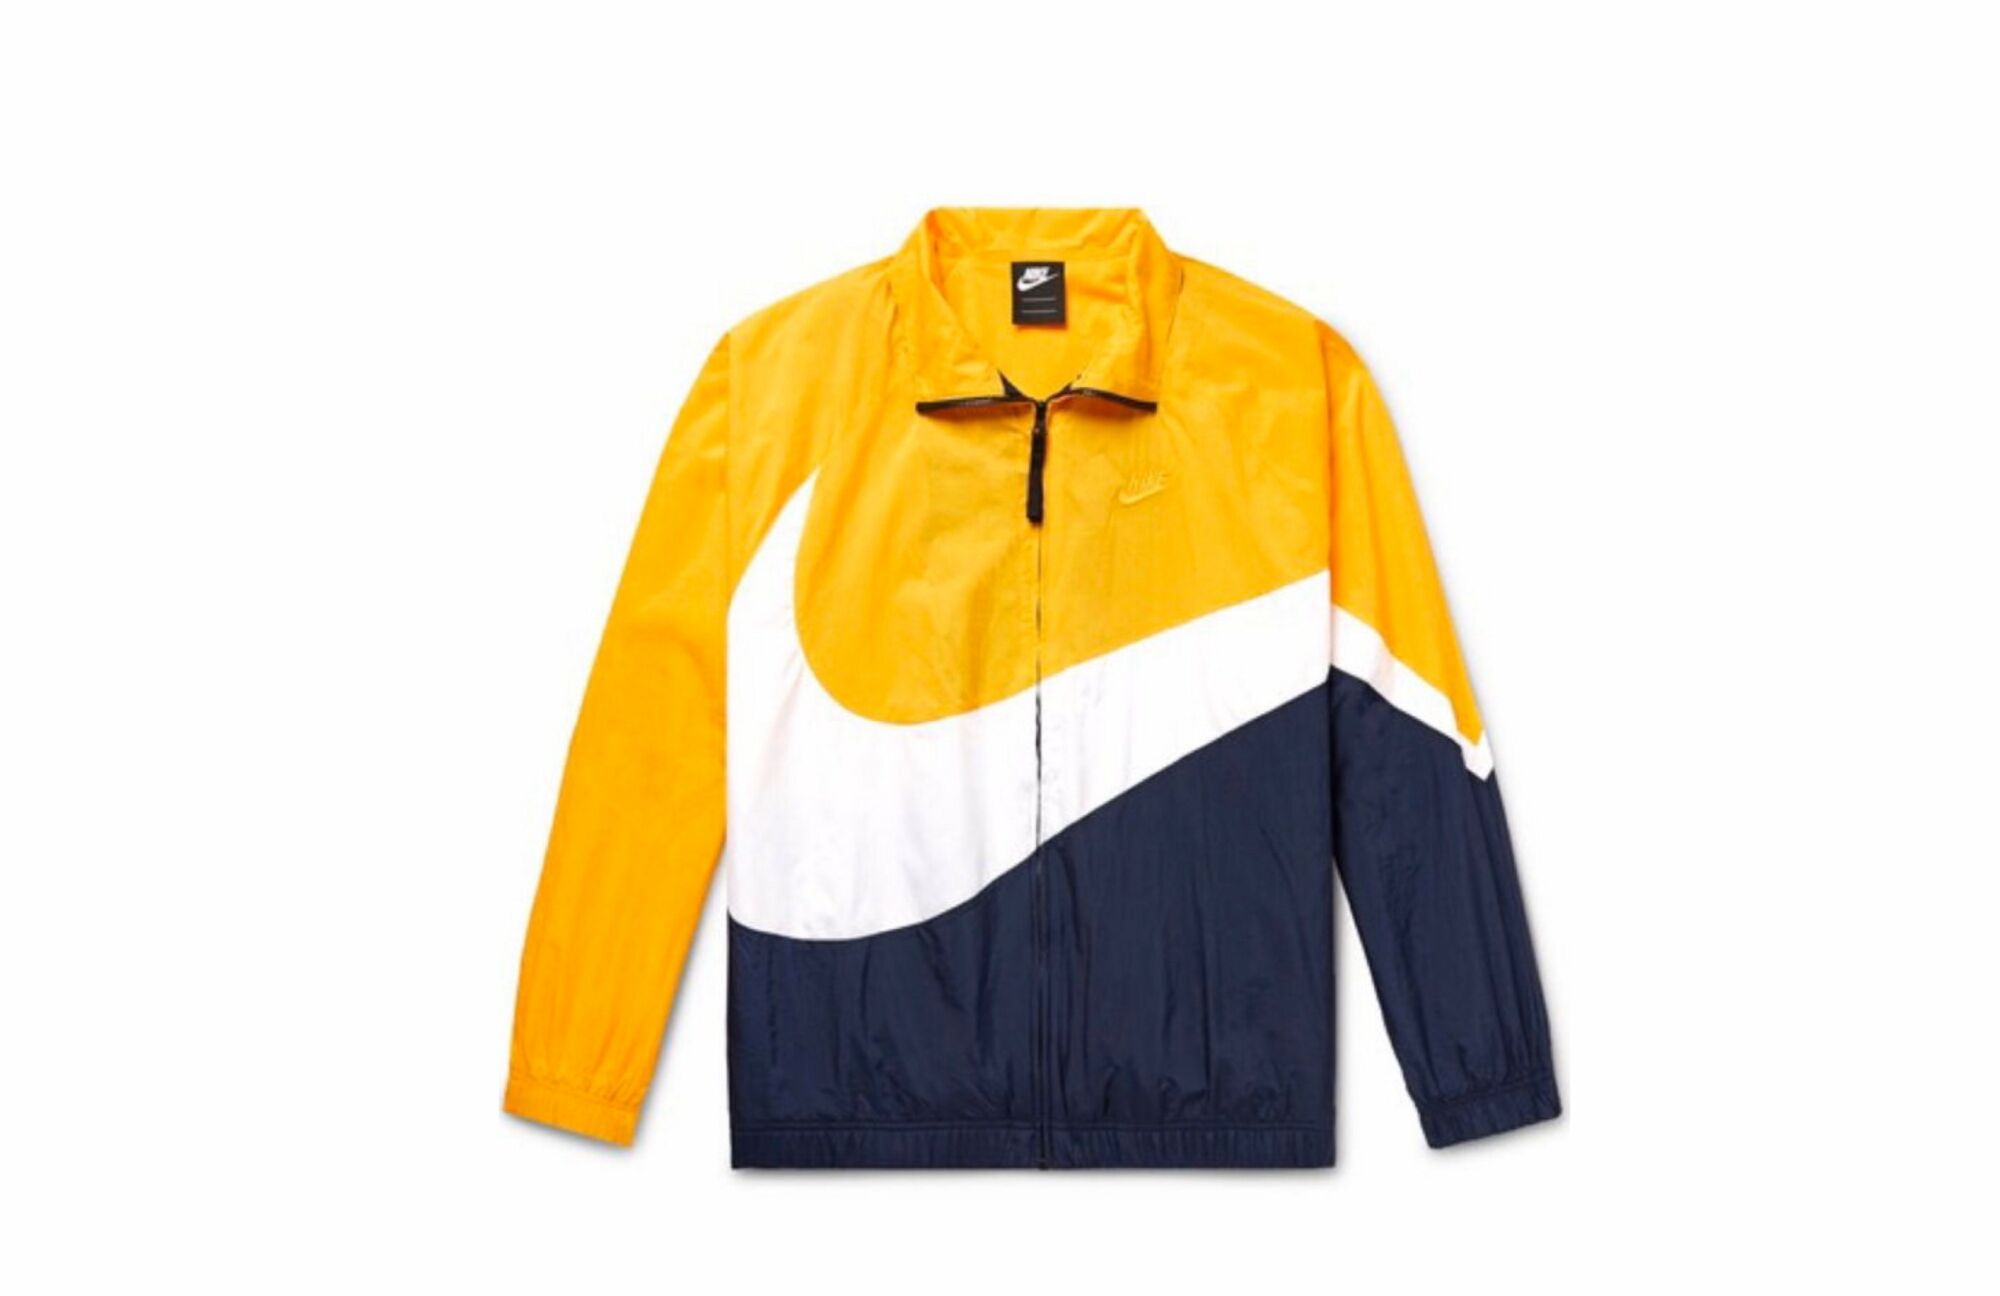 Nike retro track jacket